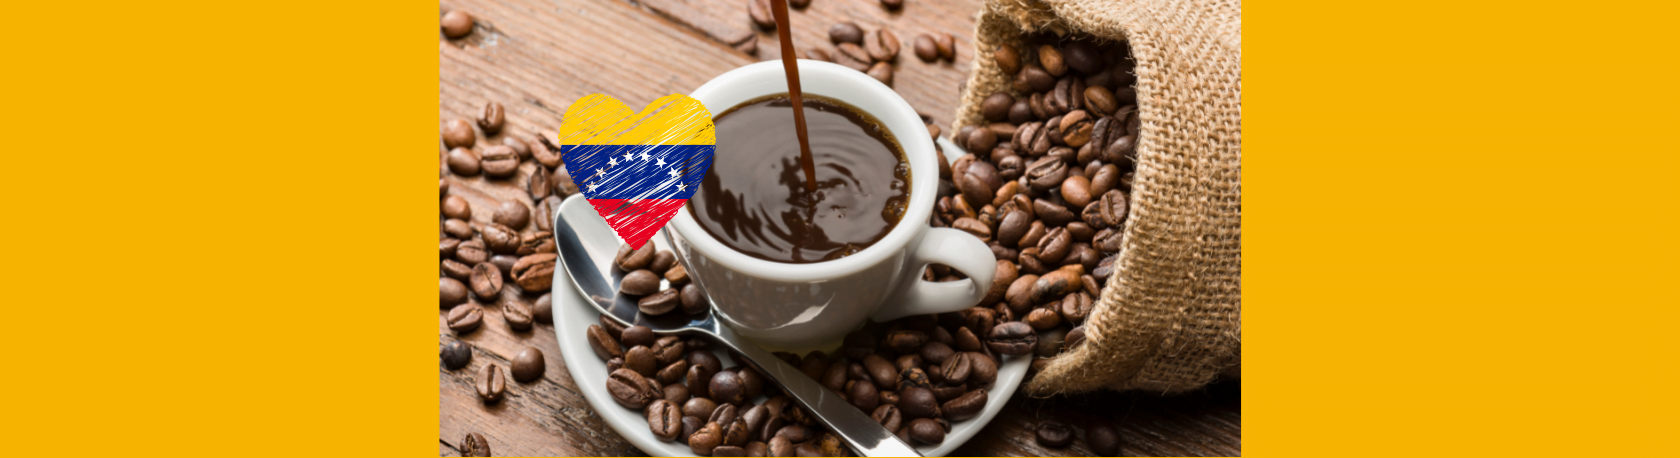 Easy Podcast: El guayoyo, la forma tradicionalmente venezolana de beber café - Easy Español